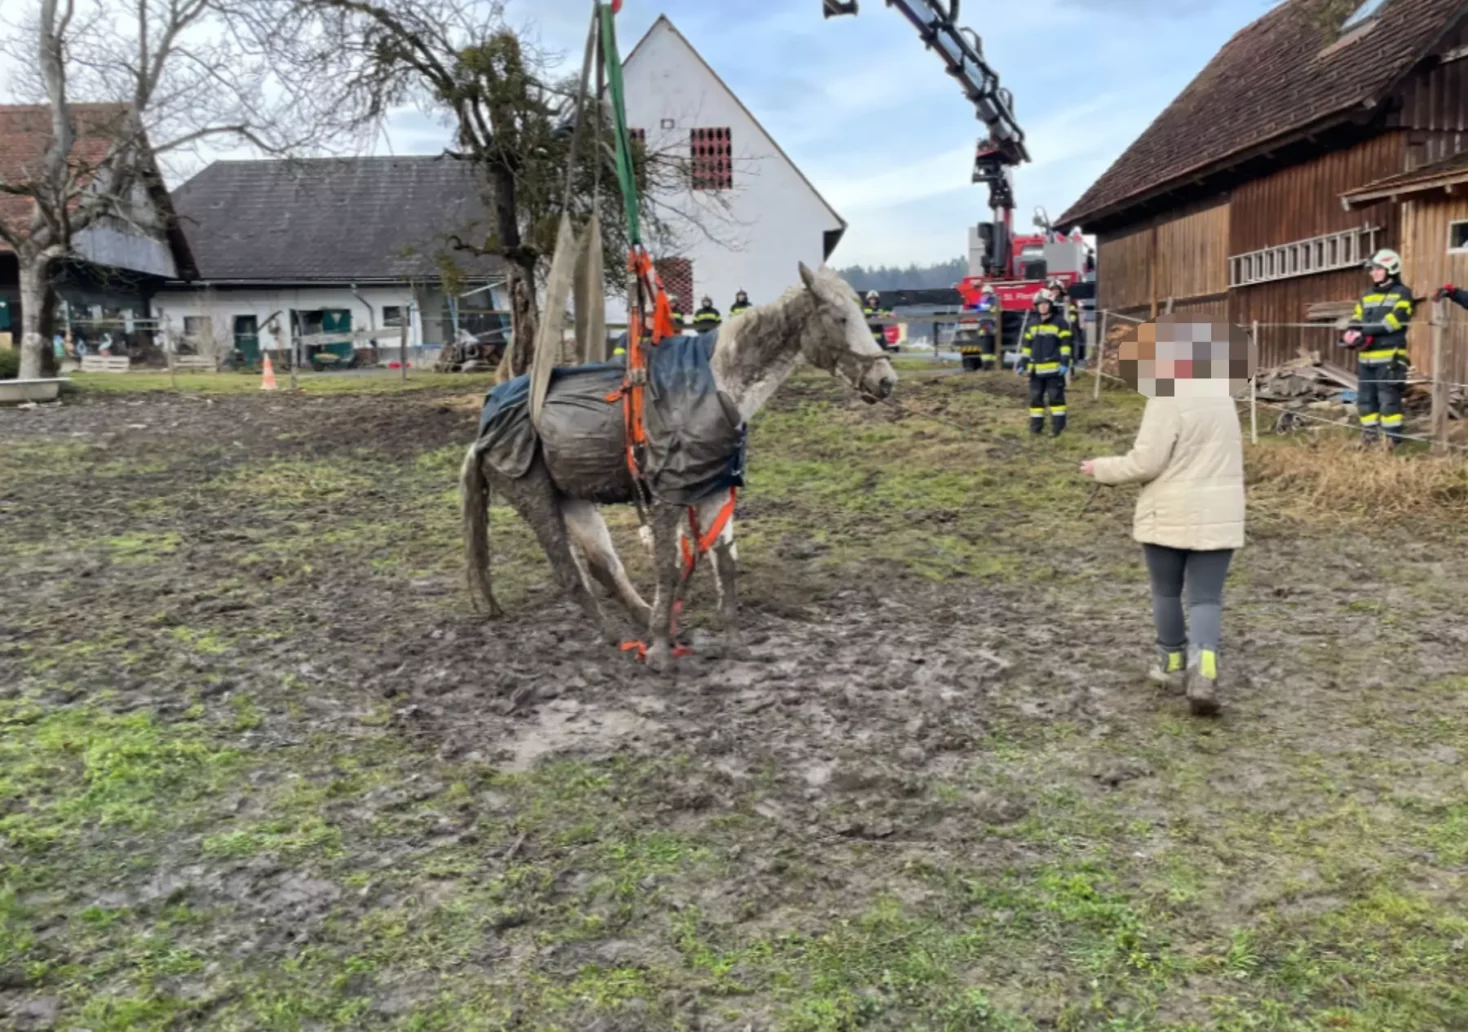 Bild auf 5min.at zeigt Florianis der FF Markt Groß St. Florian wie sie ein Pferd retten.